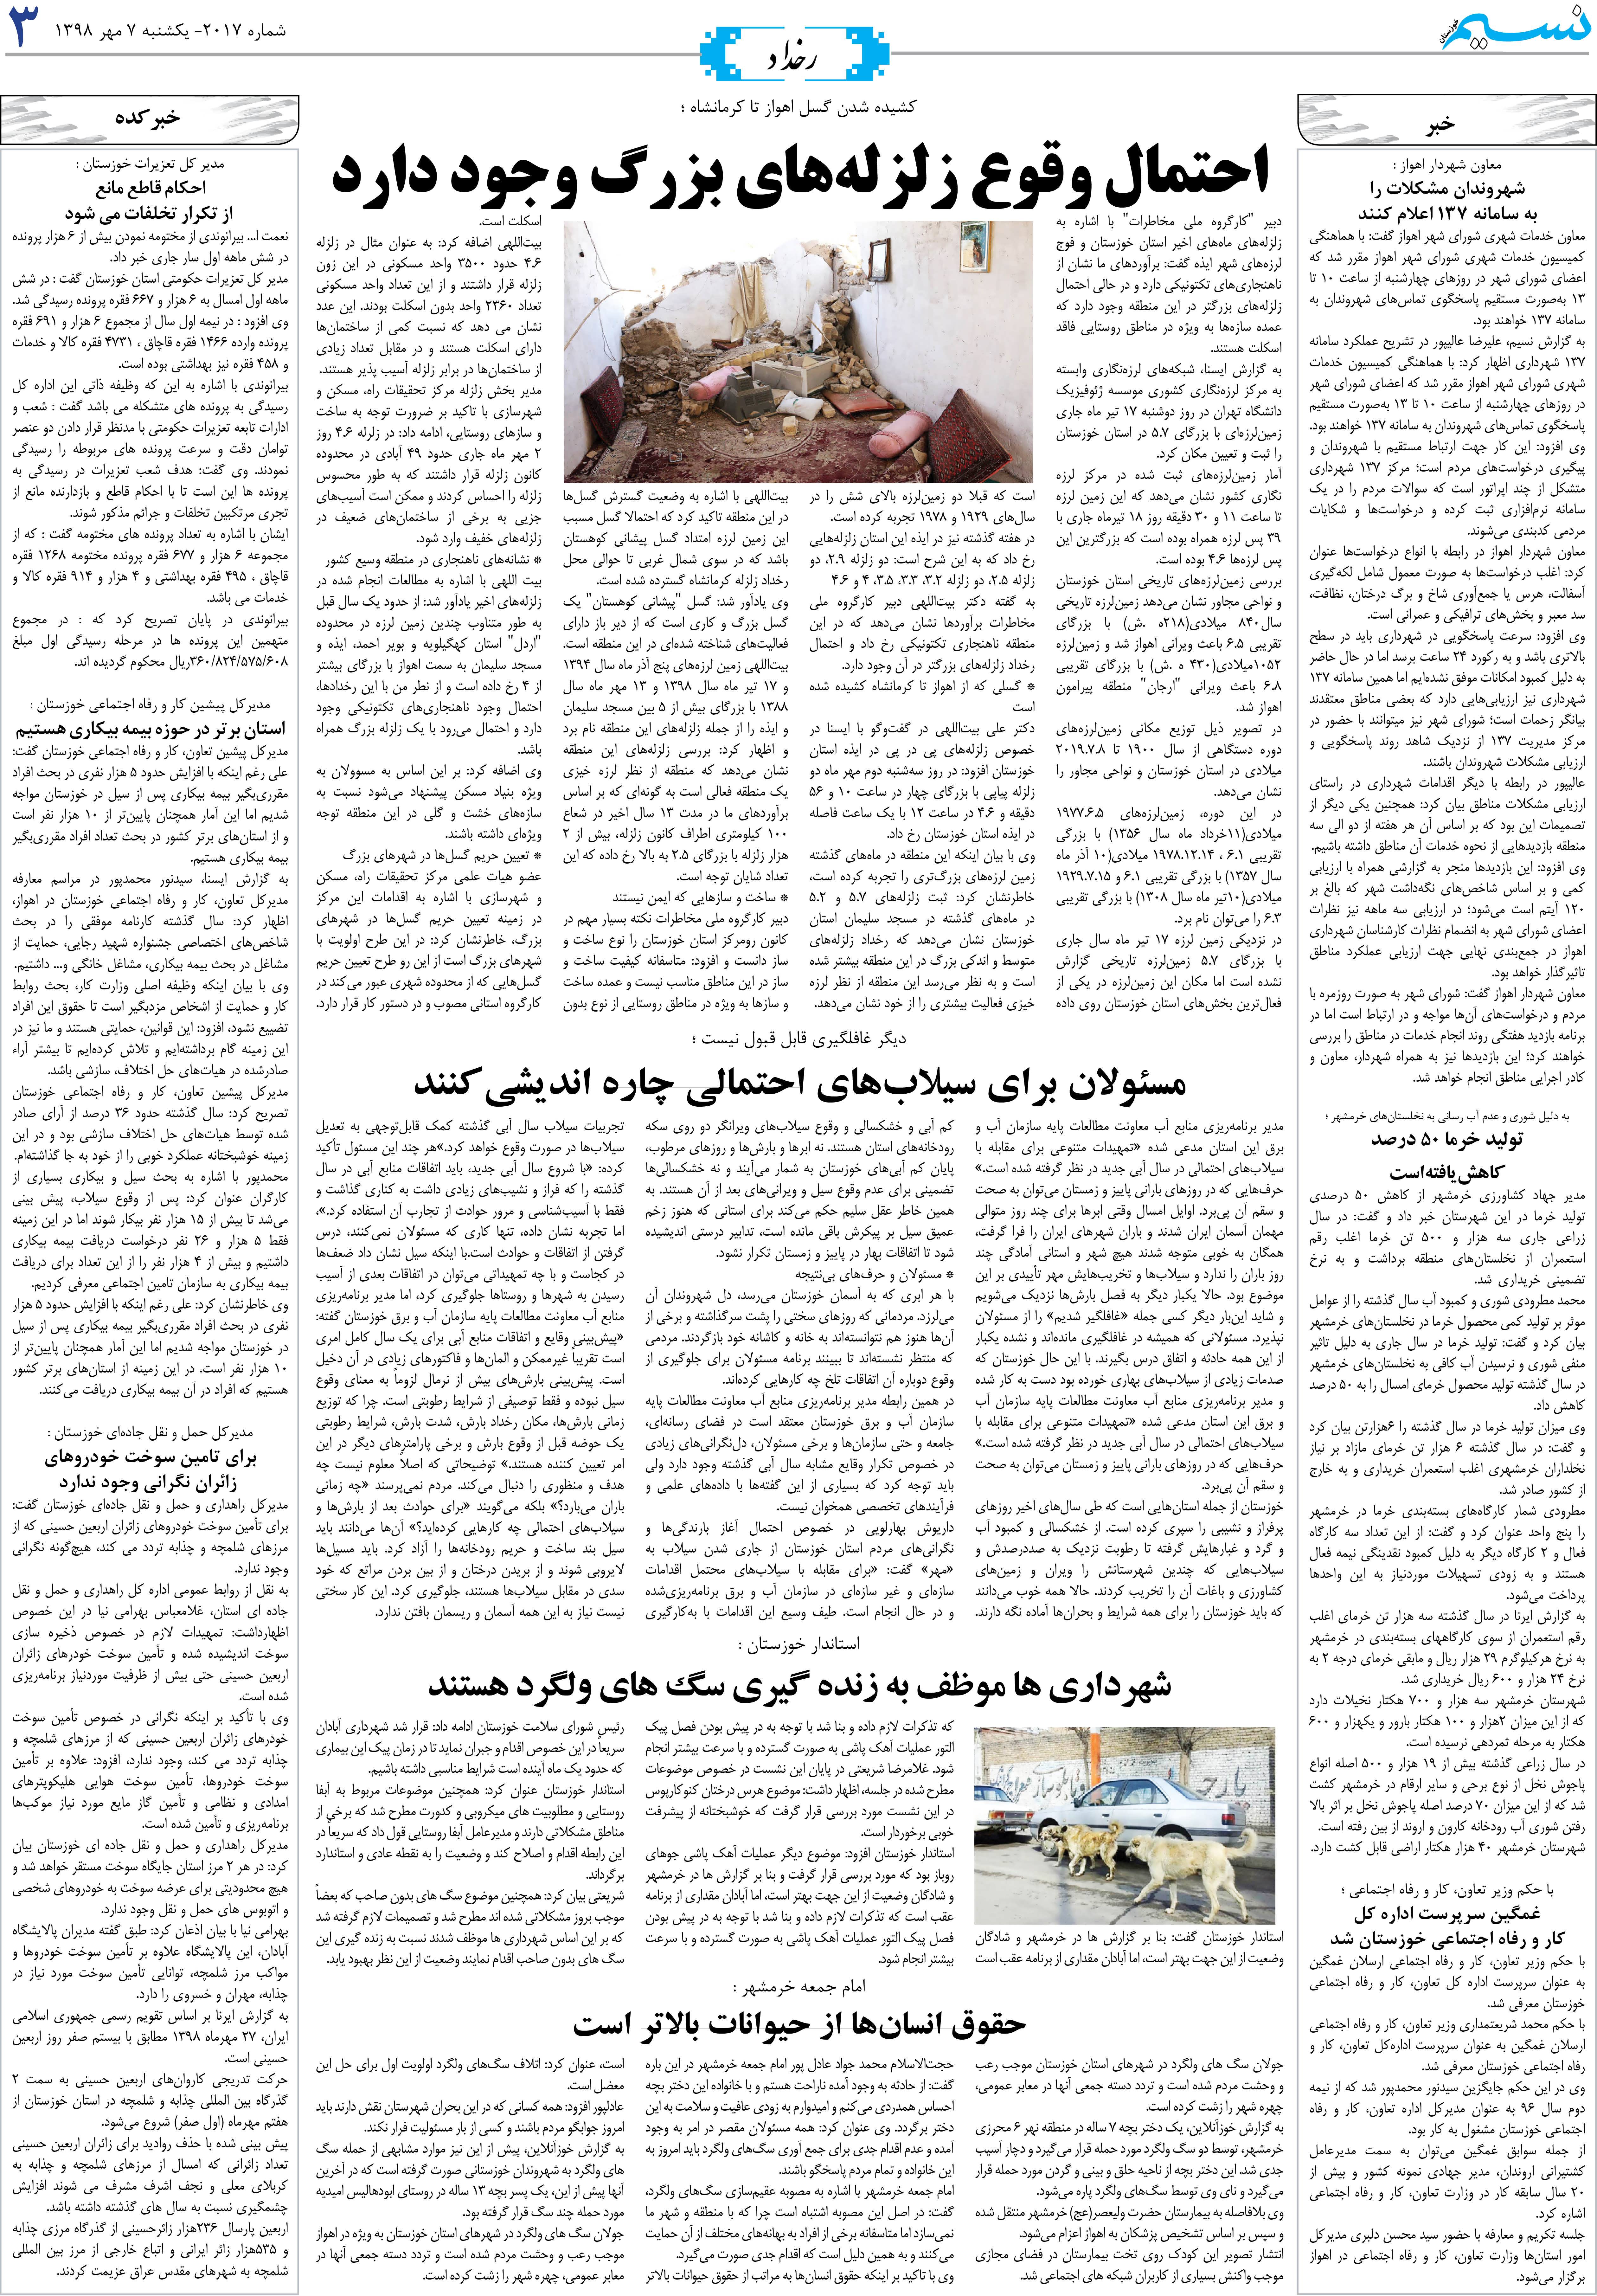 صفحه رخداد روزنامه نسیم شماره 2017